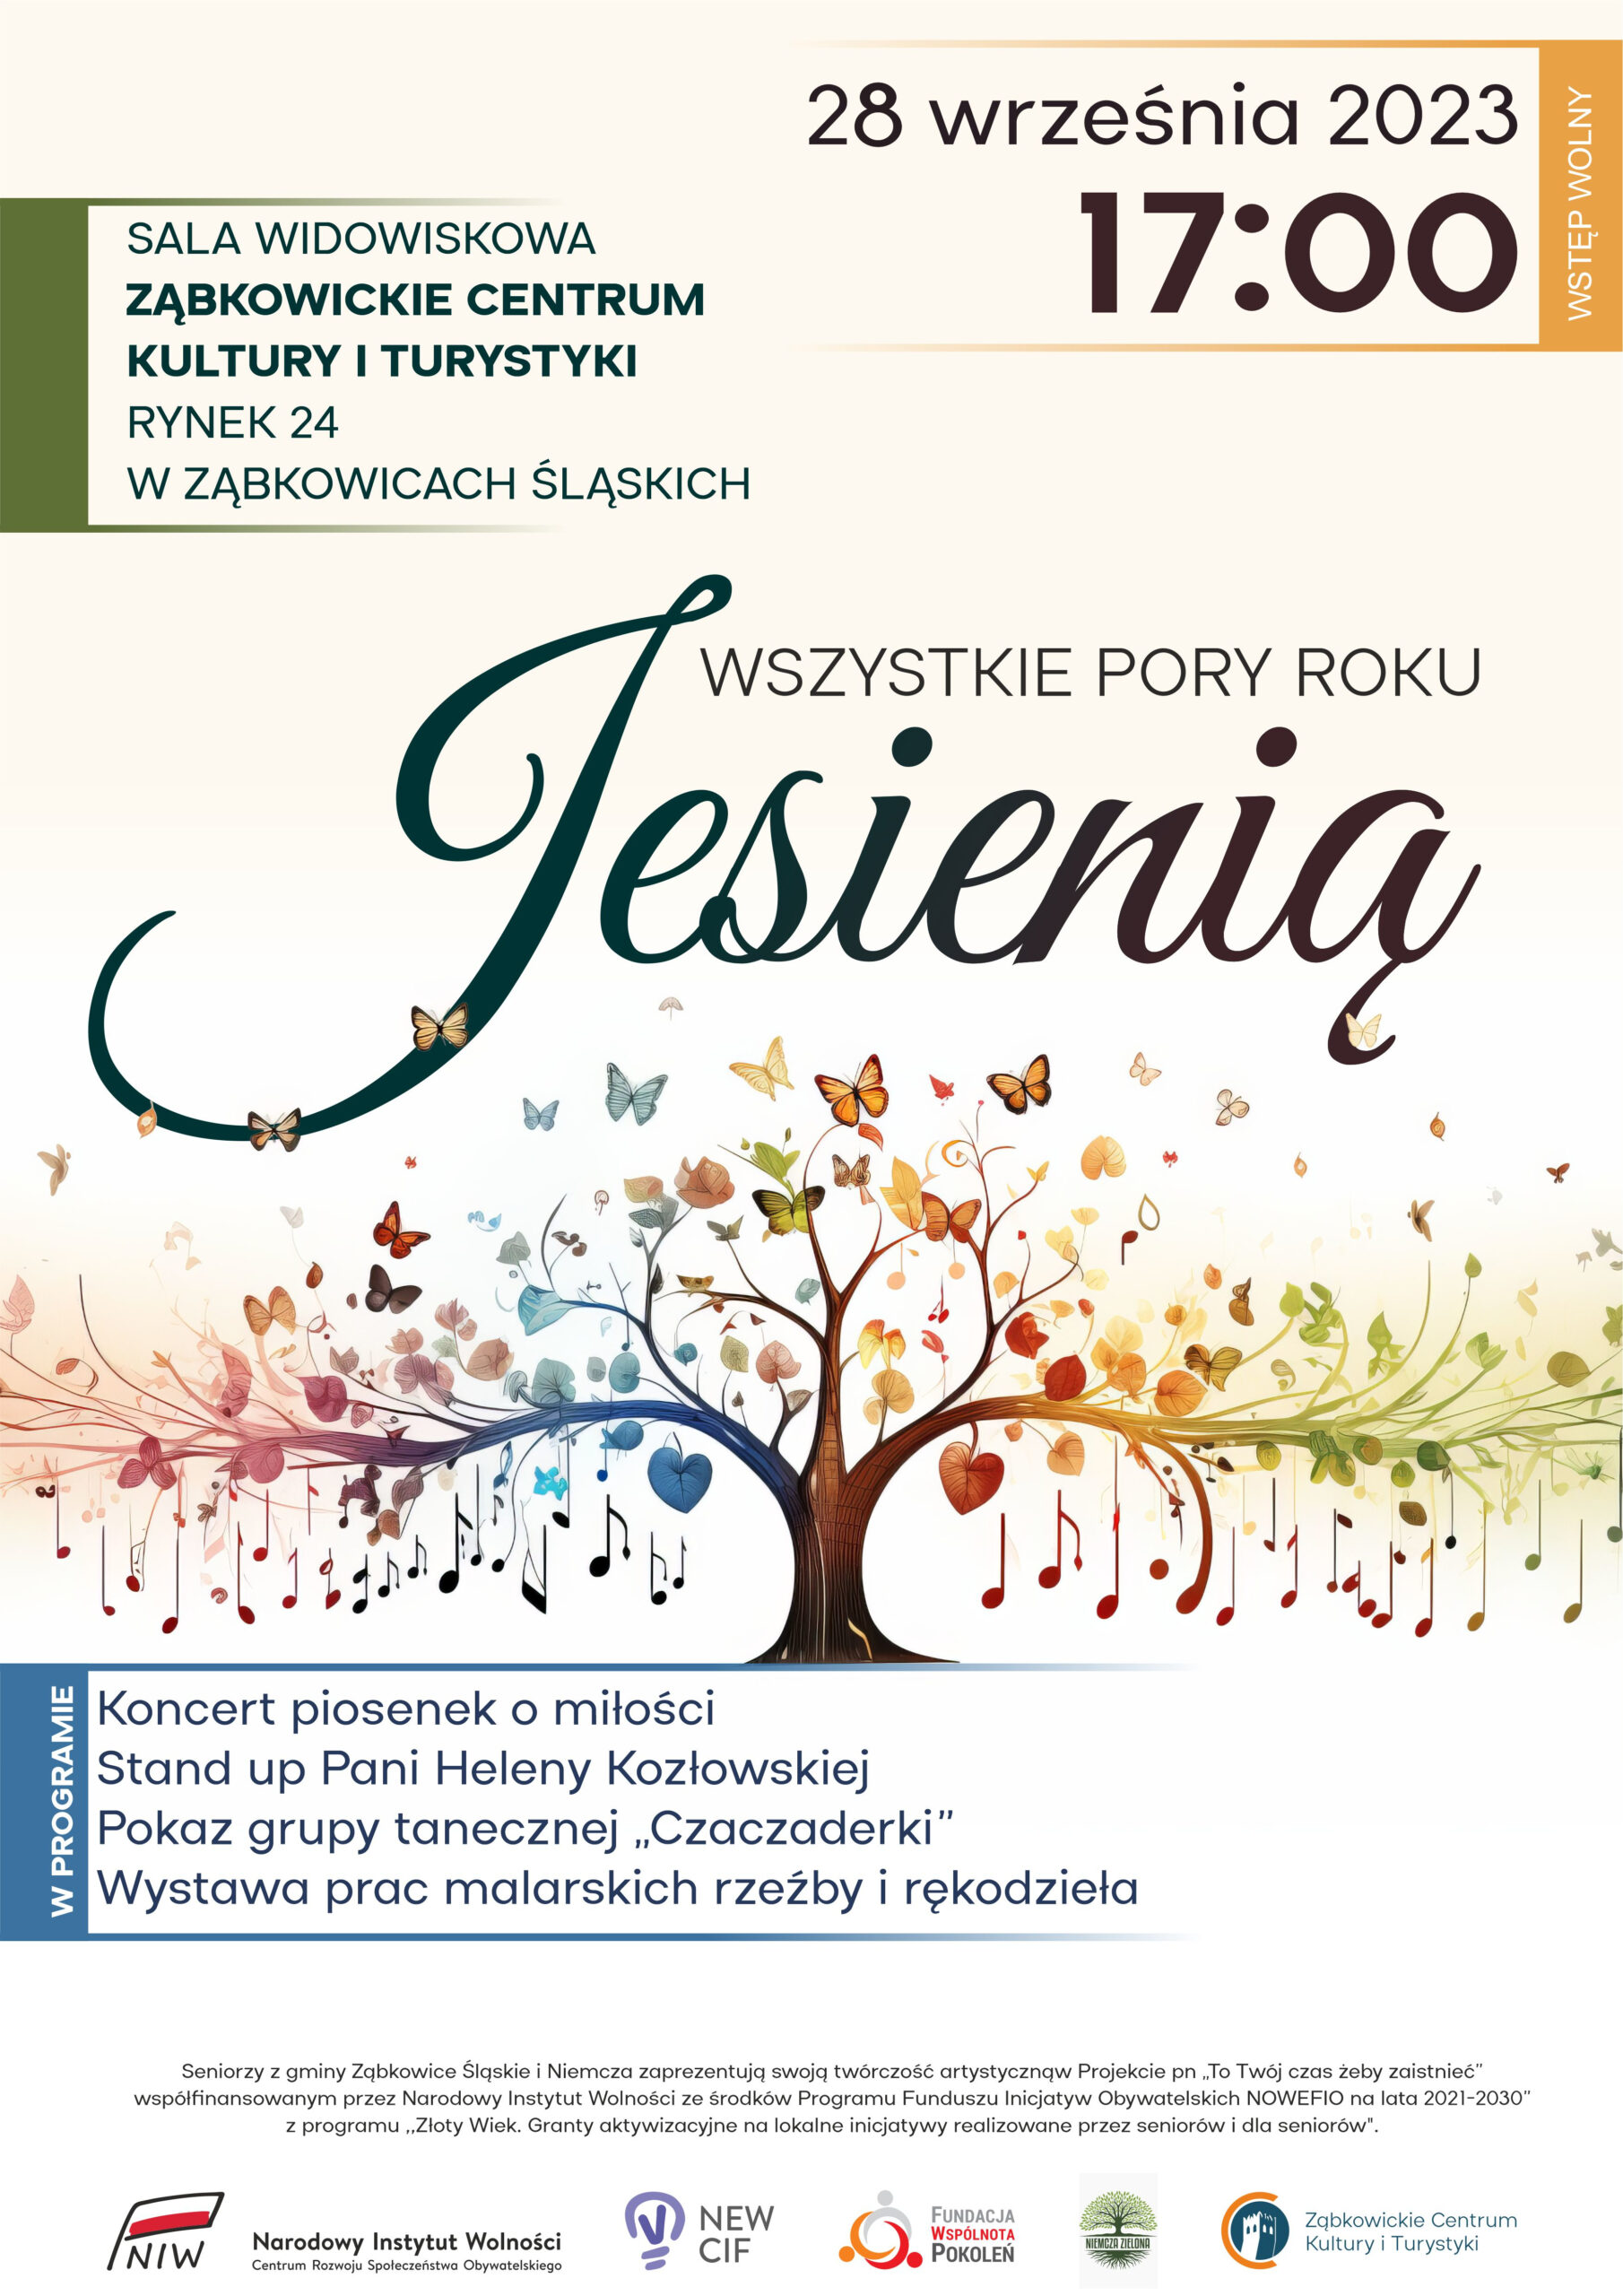 Plakat informacyjny o wydarzeniu "Wszystkie pory roku Jesienią" 28 września 2023 o godzinie 17:00 w Ząbkowickim Centrum Kultury i Turystyki. Na plakacie znajduje się rysunek drzewa z kolorowymi gałęziami, motylami i nutami.